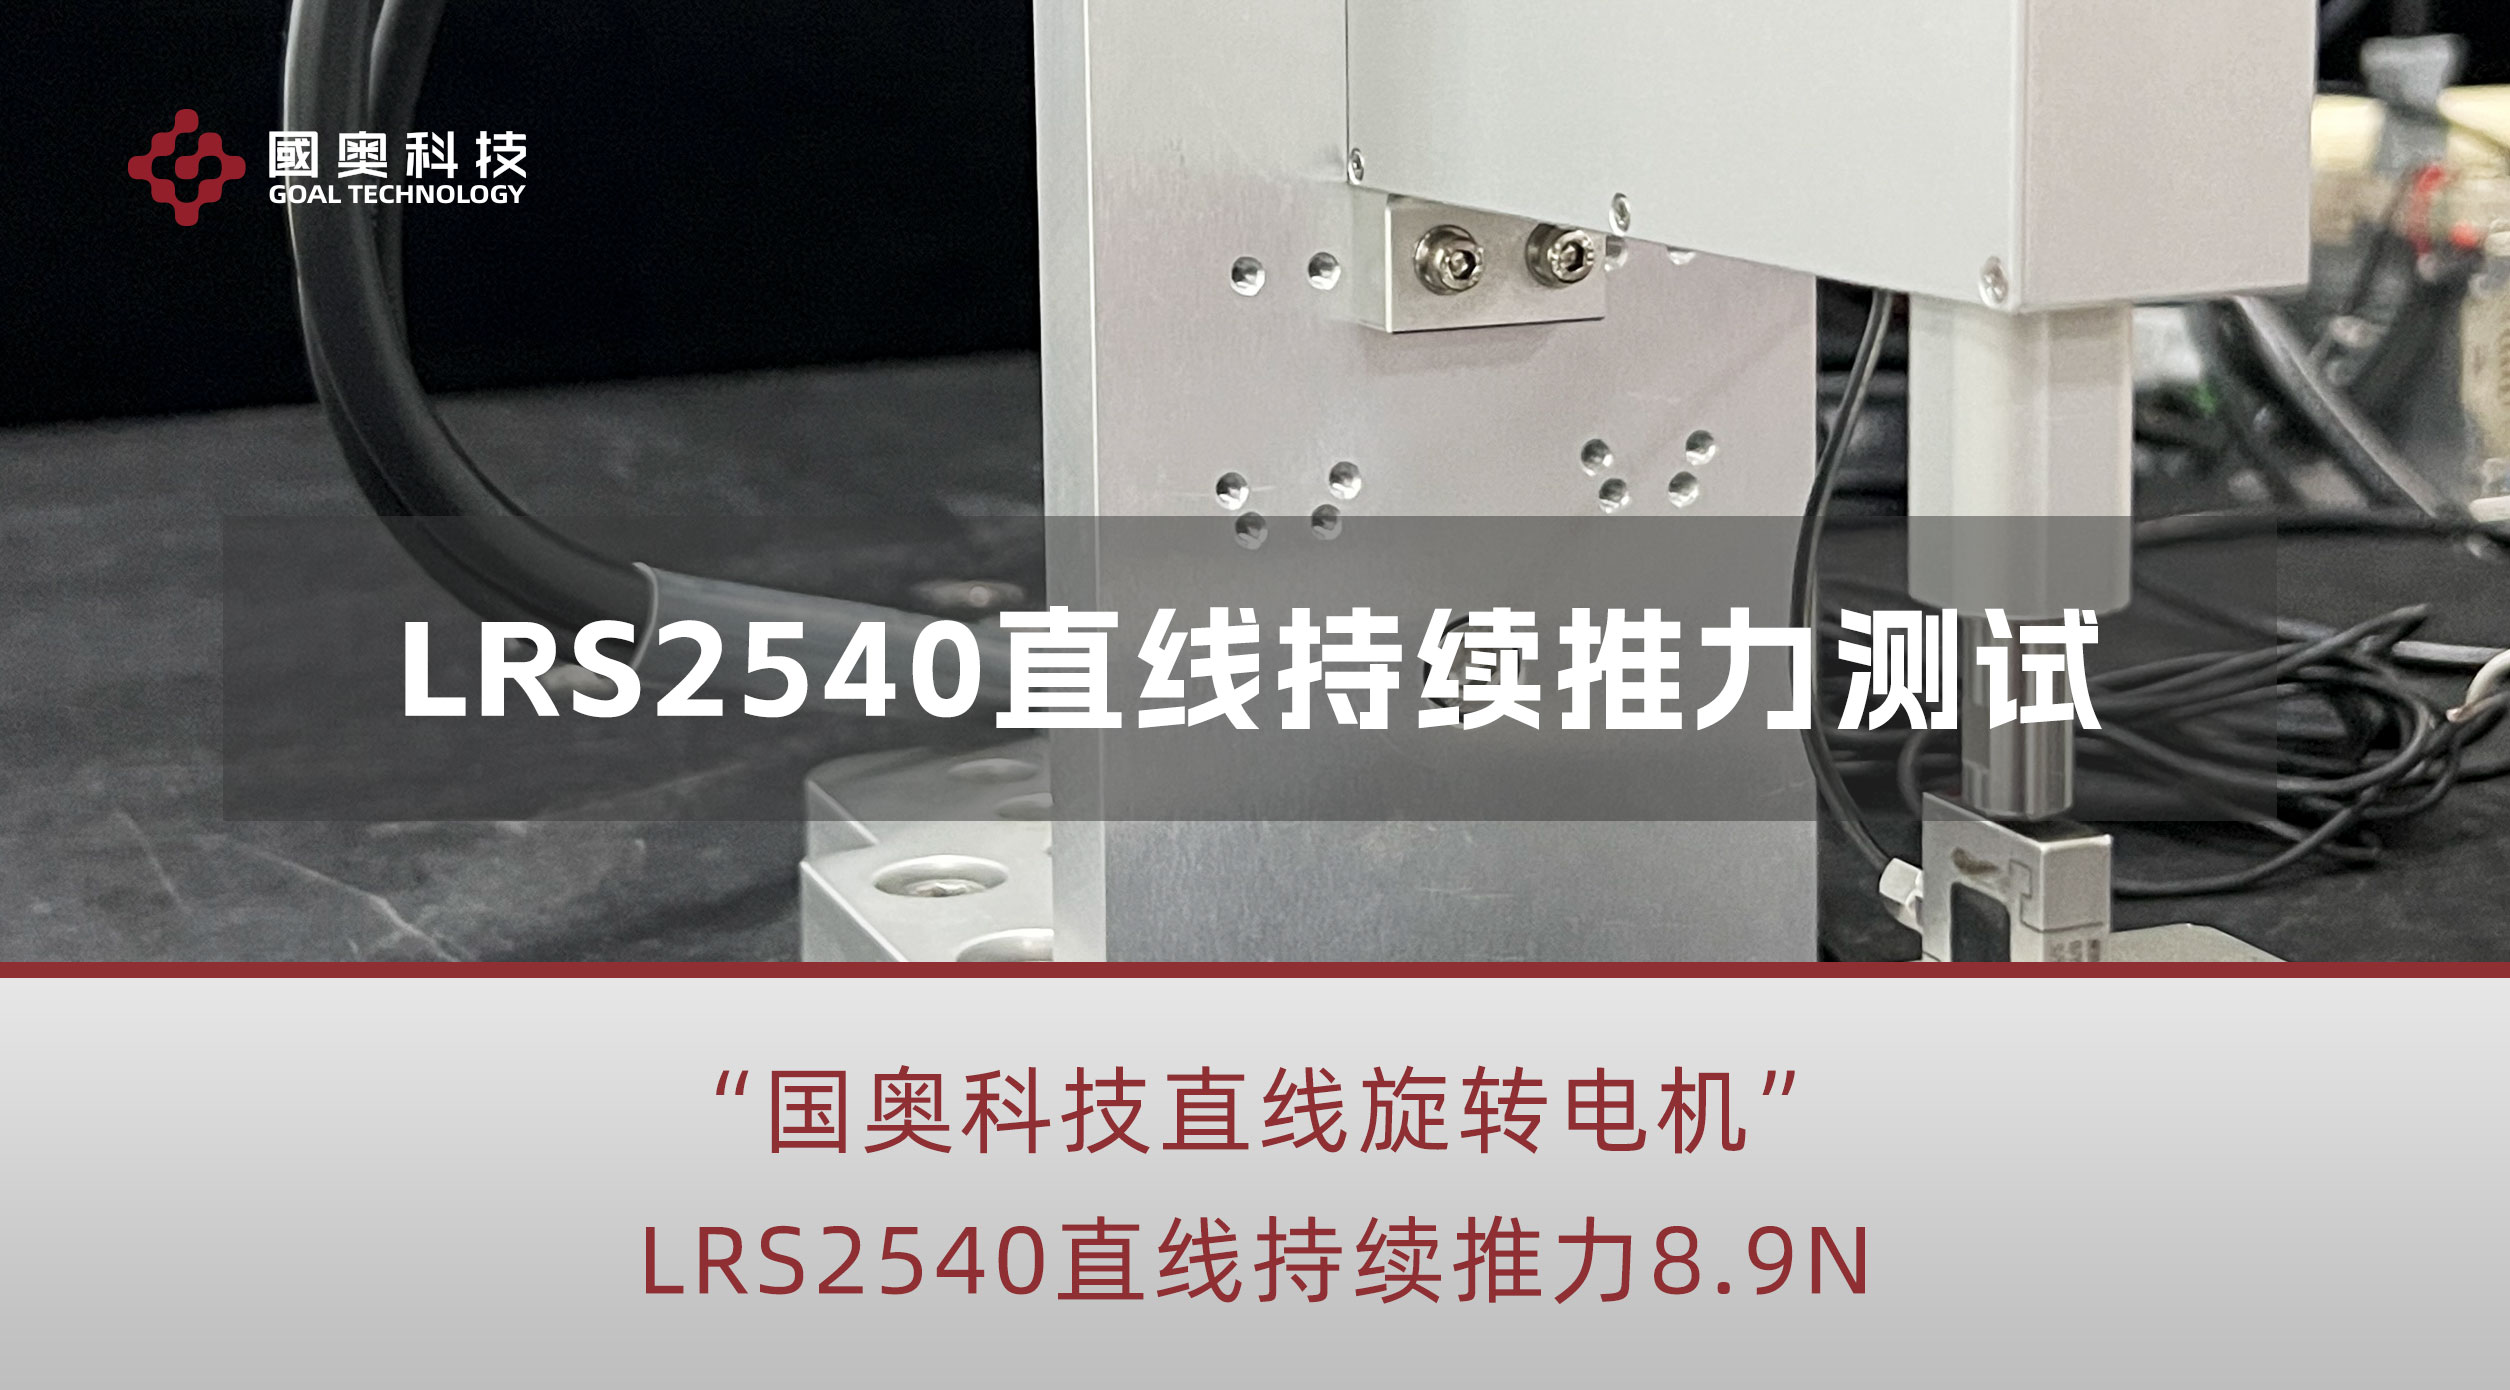 新款直线旋转电机LRS2540直线推力测试，稳定输出8.9N #ZR轴电机 #直线旋转电机 #半导体设备
 